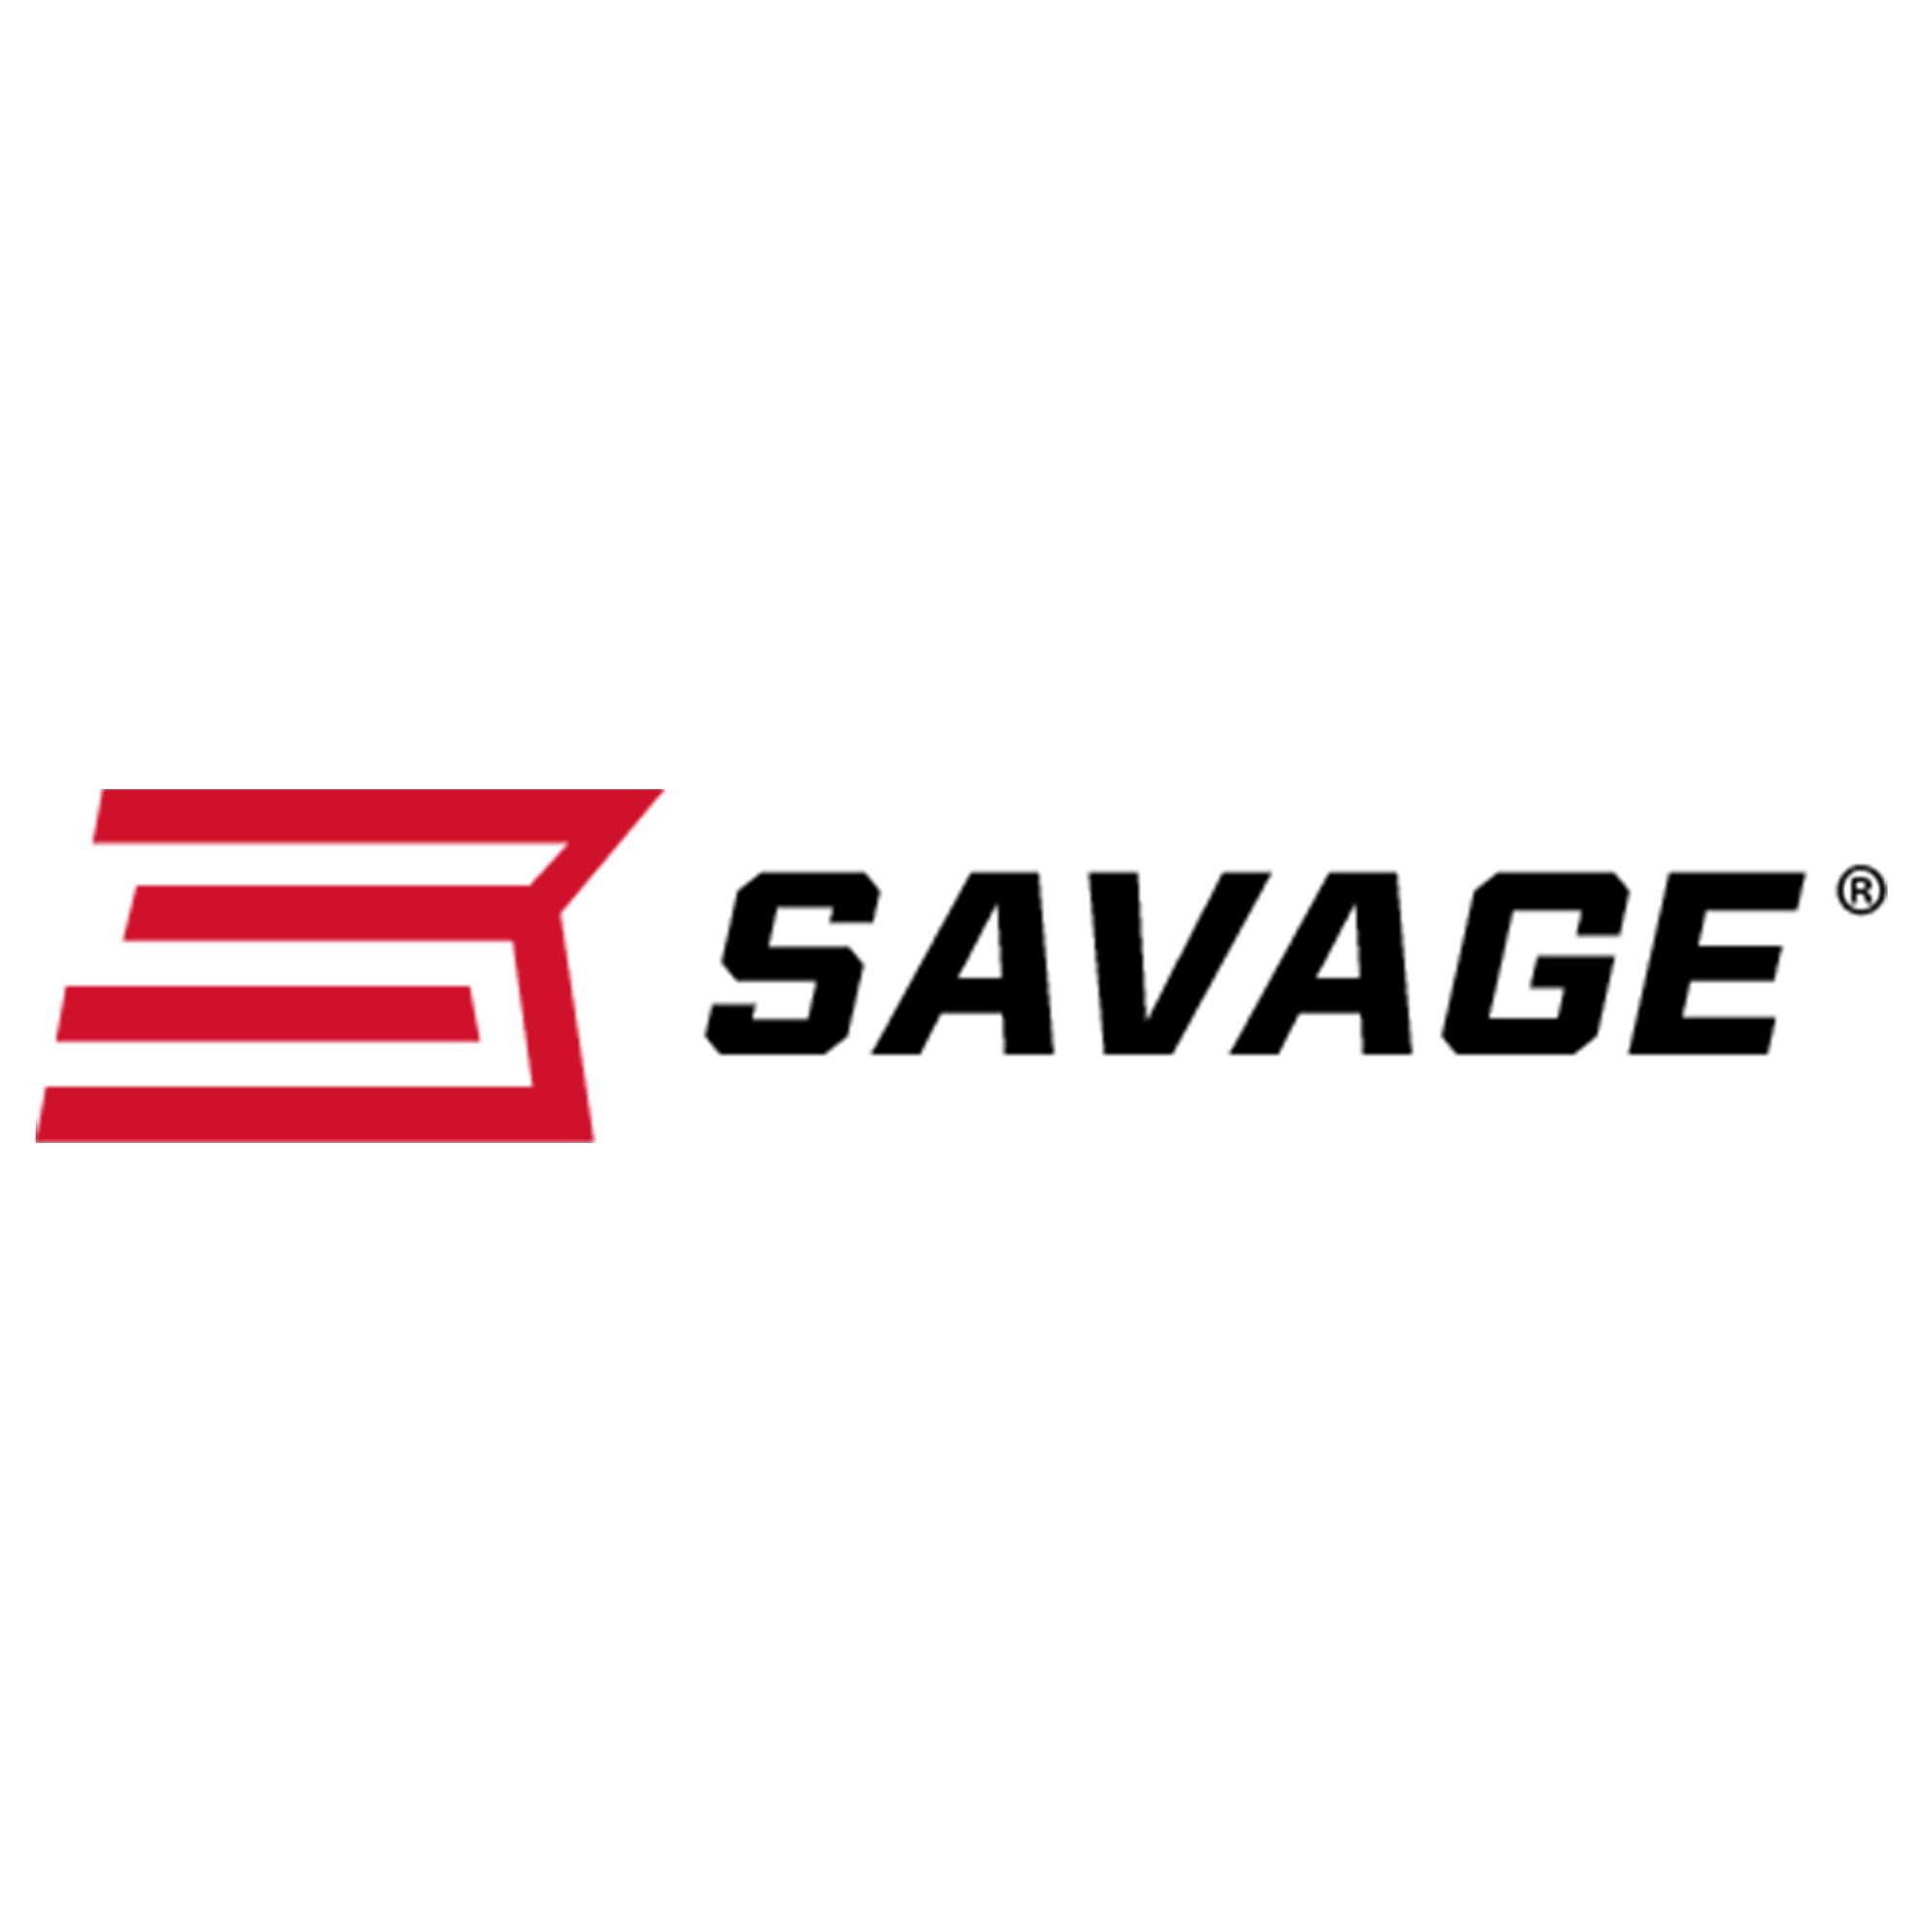 savage arms logo.jpg